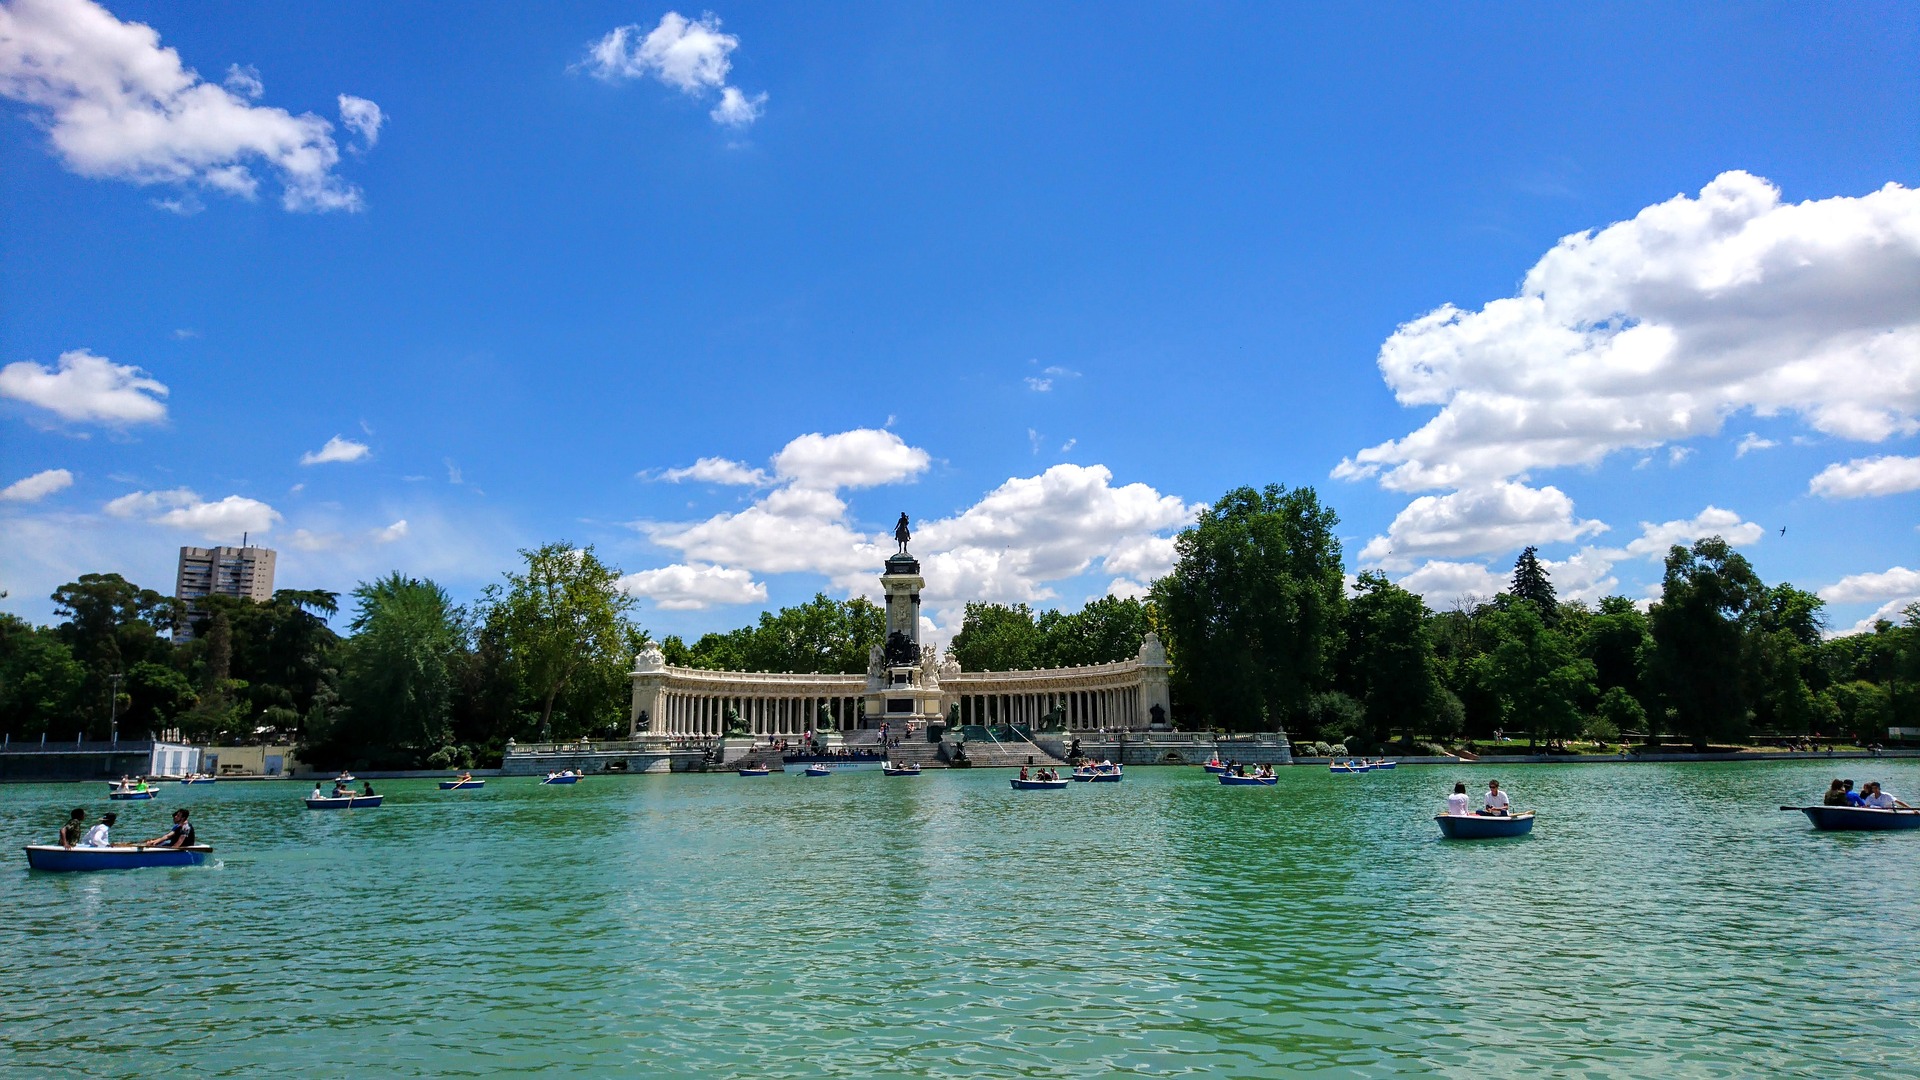 <p>Descubre el encanto del oasis urbano de Madrid: El Parque del Retiro. Este hermoso parque, que abarca 142 hectáreas, atrae numerosos visitantes con su ambiente sereno y sus variadas atracciones. Desde paseos tranquilos a aventuras en bote de remos en el lago, El Retiro es el lugar perfecto para escaparse del ajetreo y bullicio de la capital.</p>
